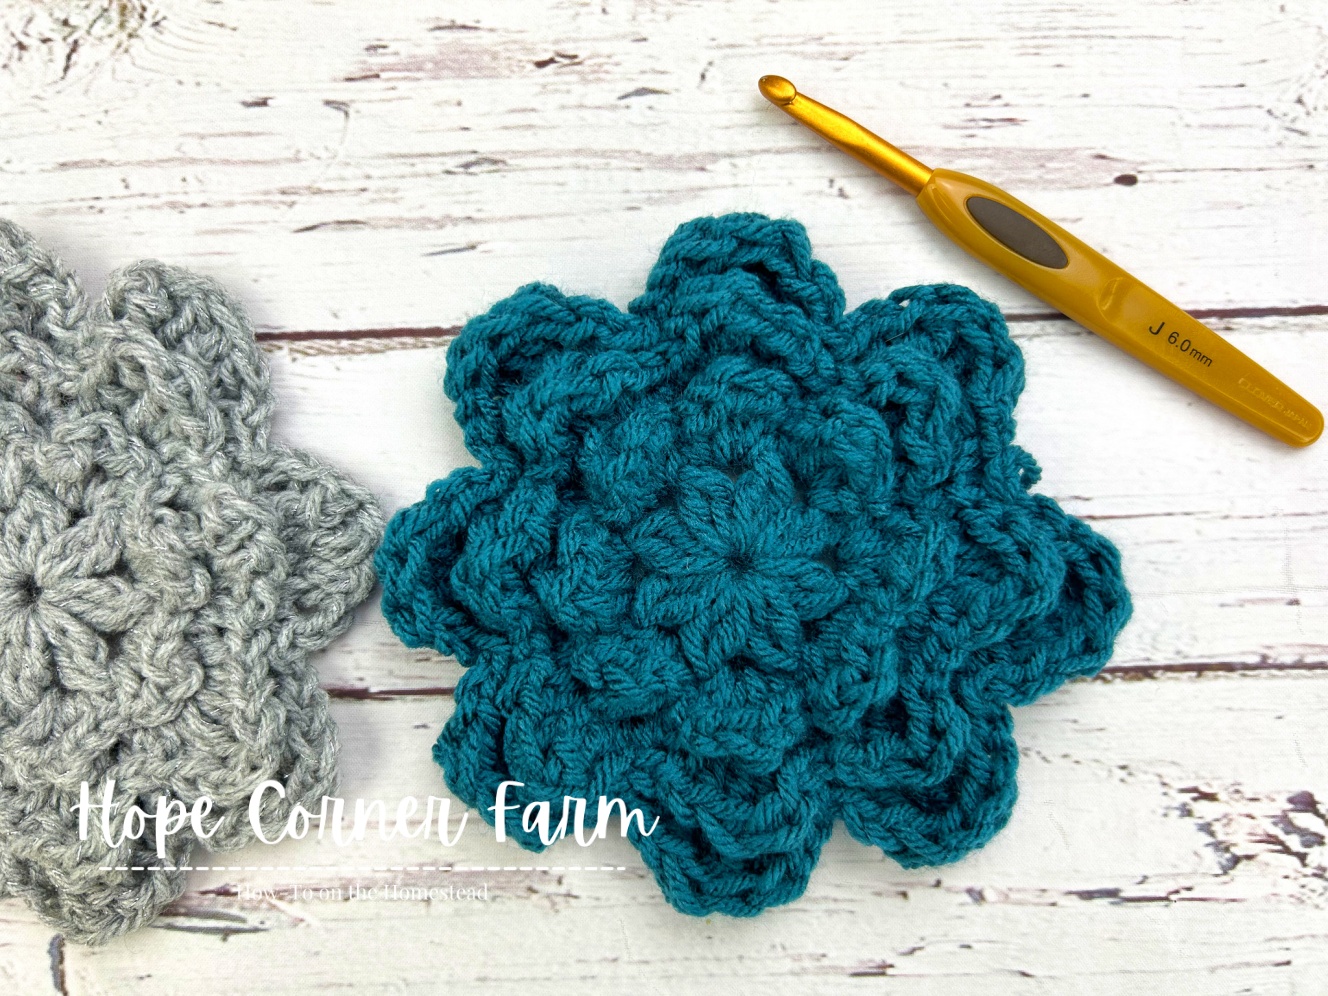 How to Crochet a Big Crochet Flower